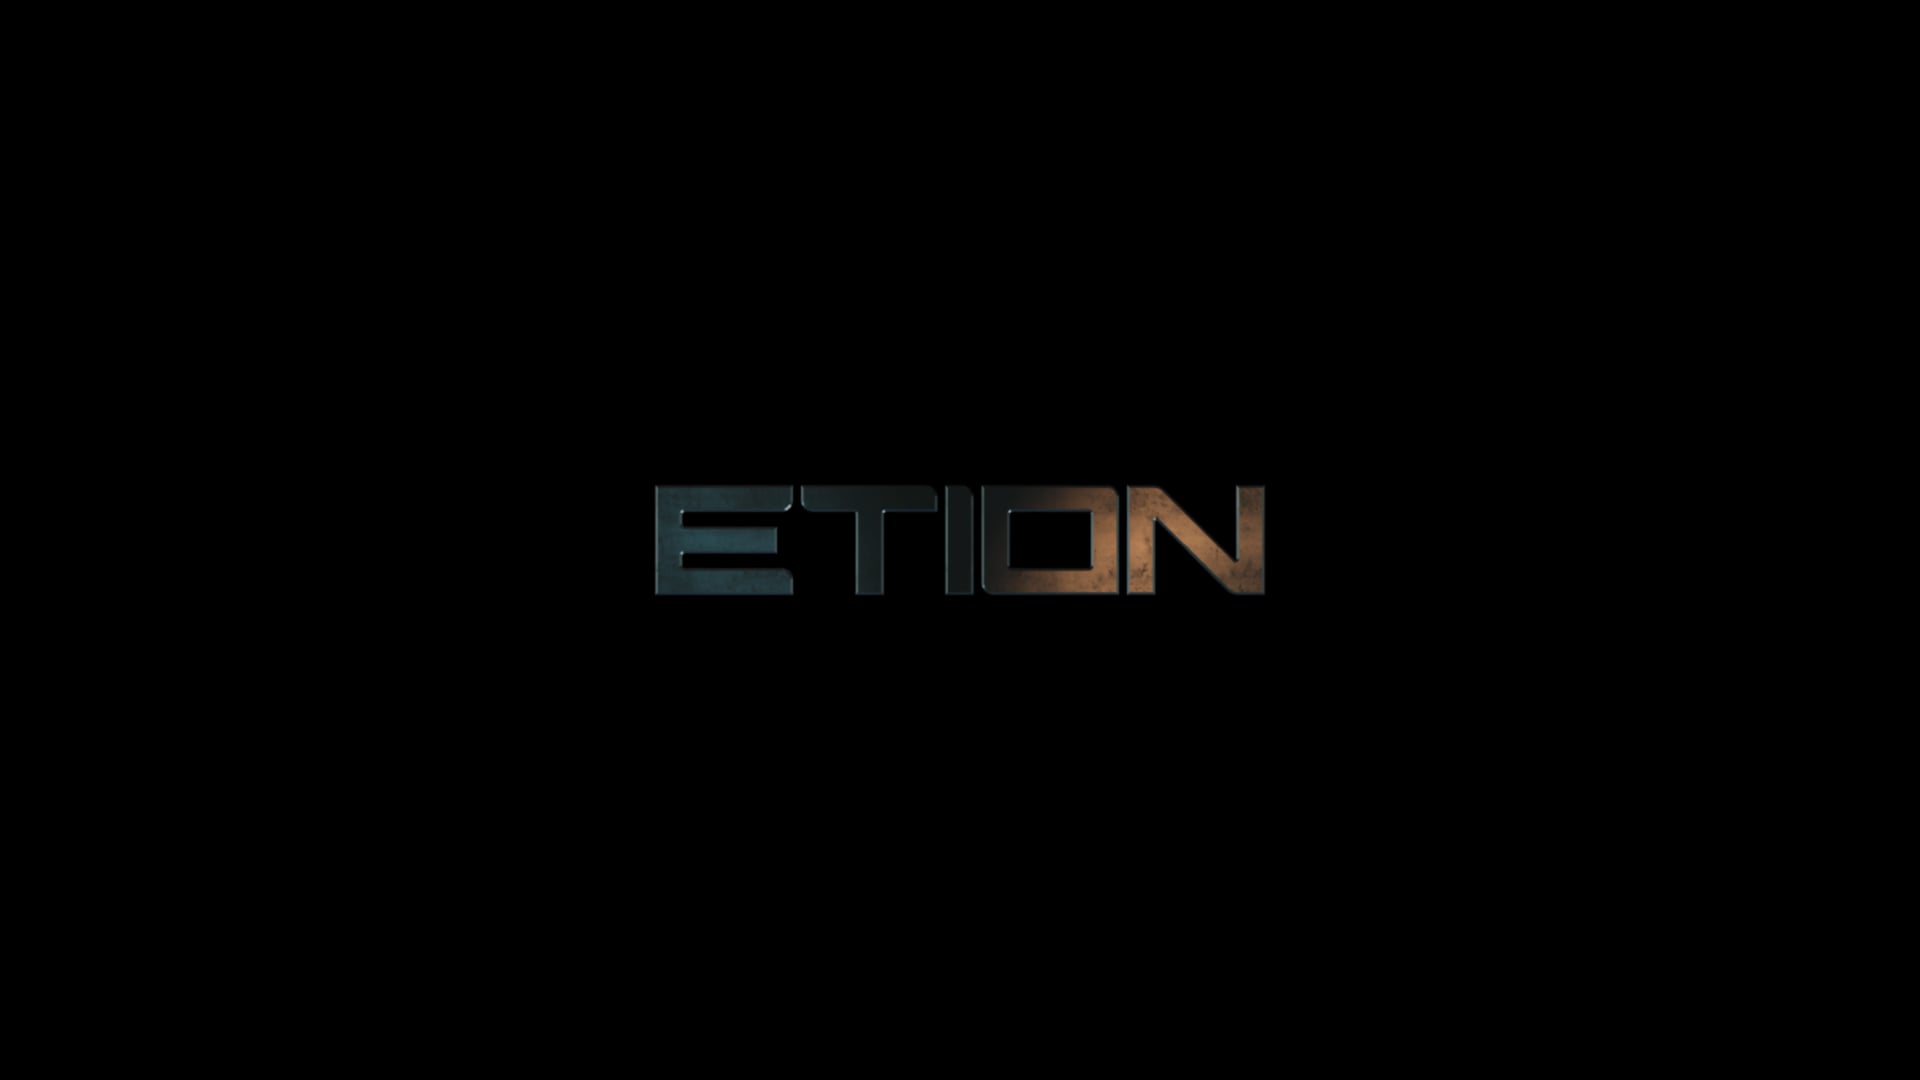 ETION - Sonic Branding